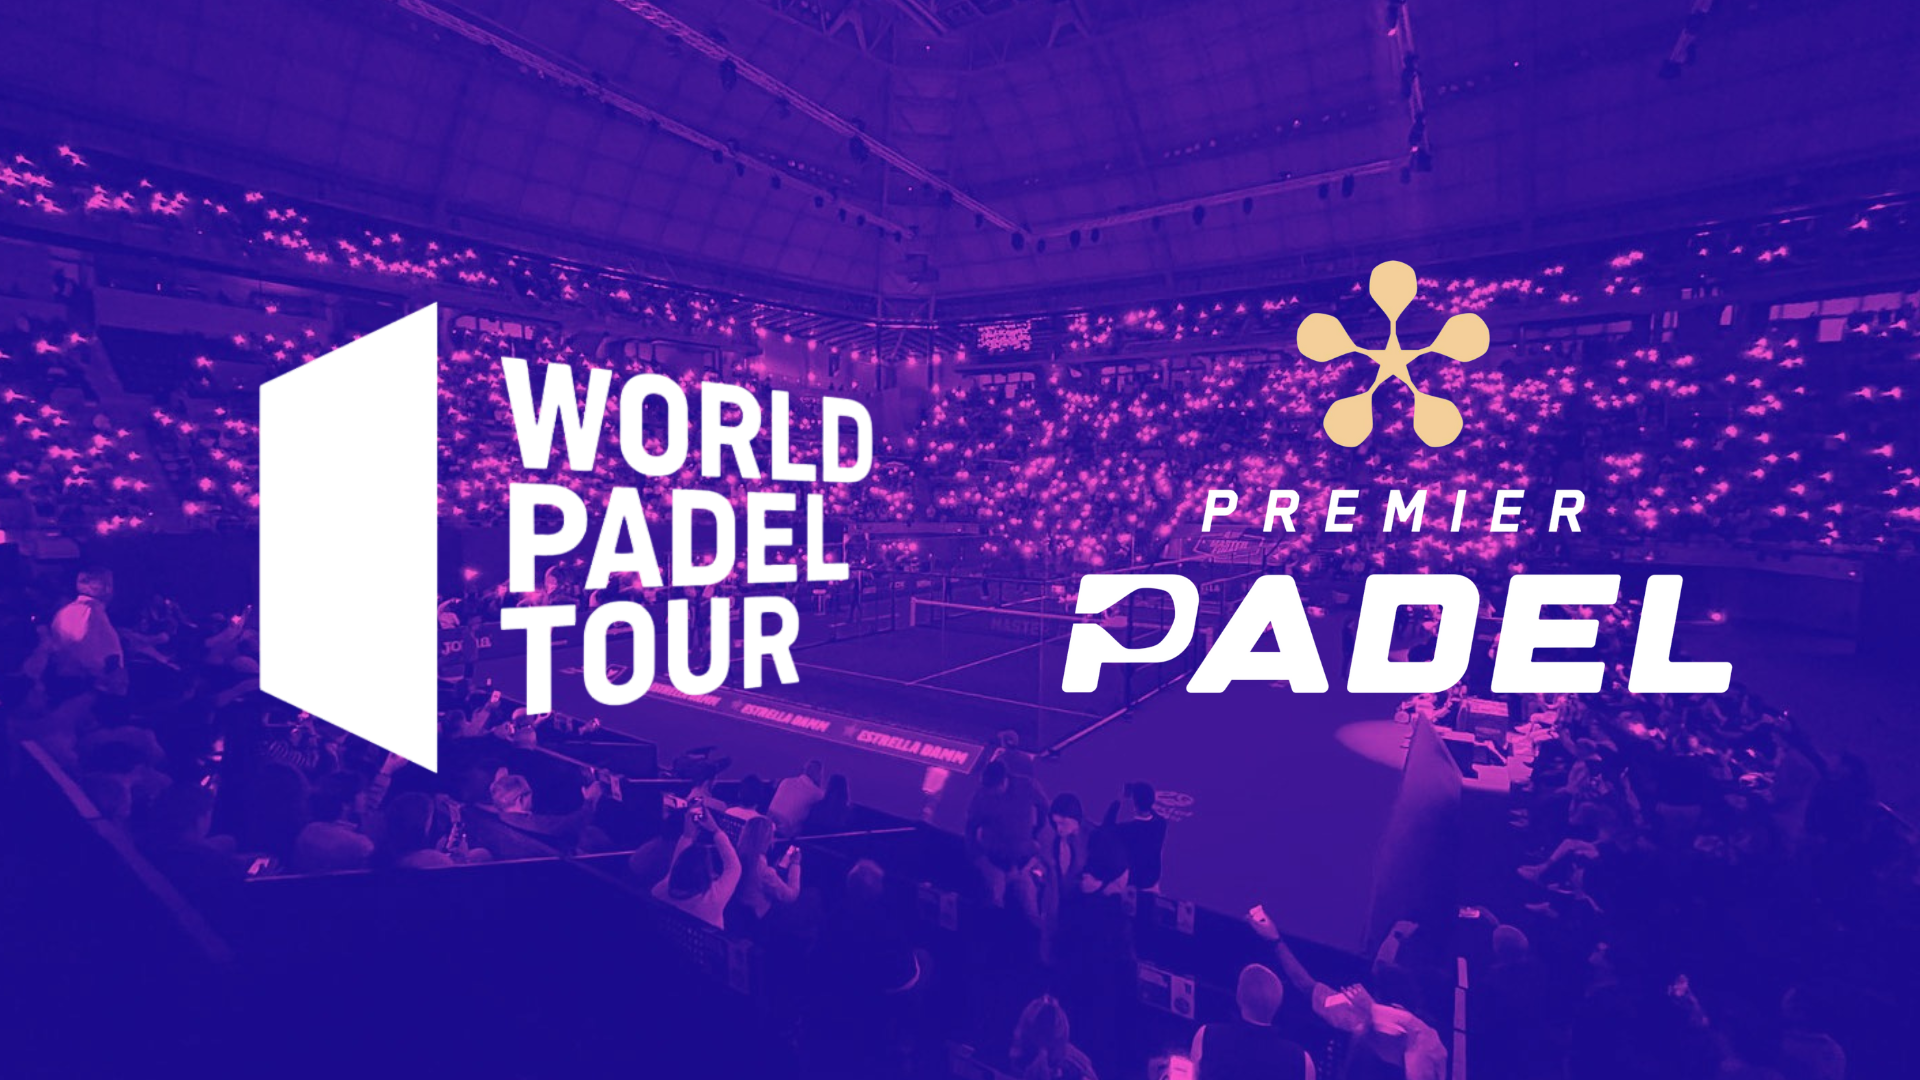 Le World Padel Tour et Premier Padel czy naprawdę mogą być jednością?